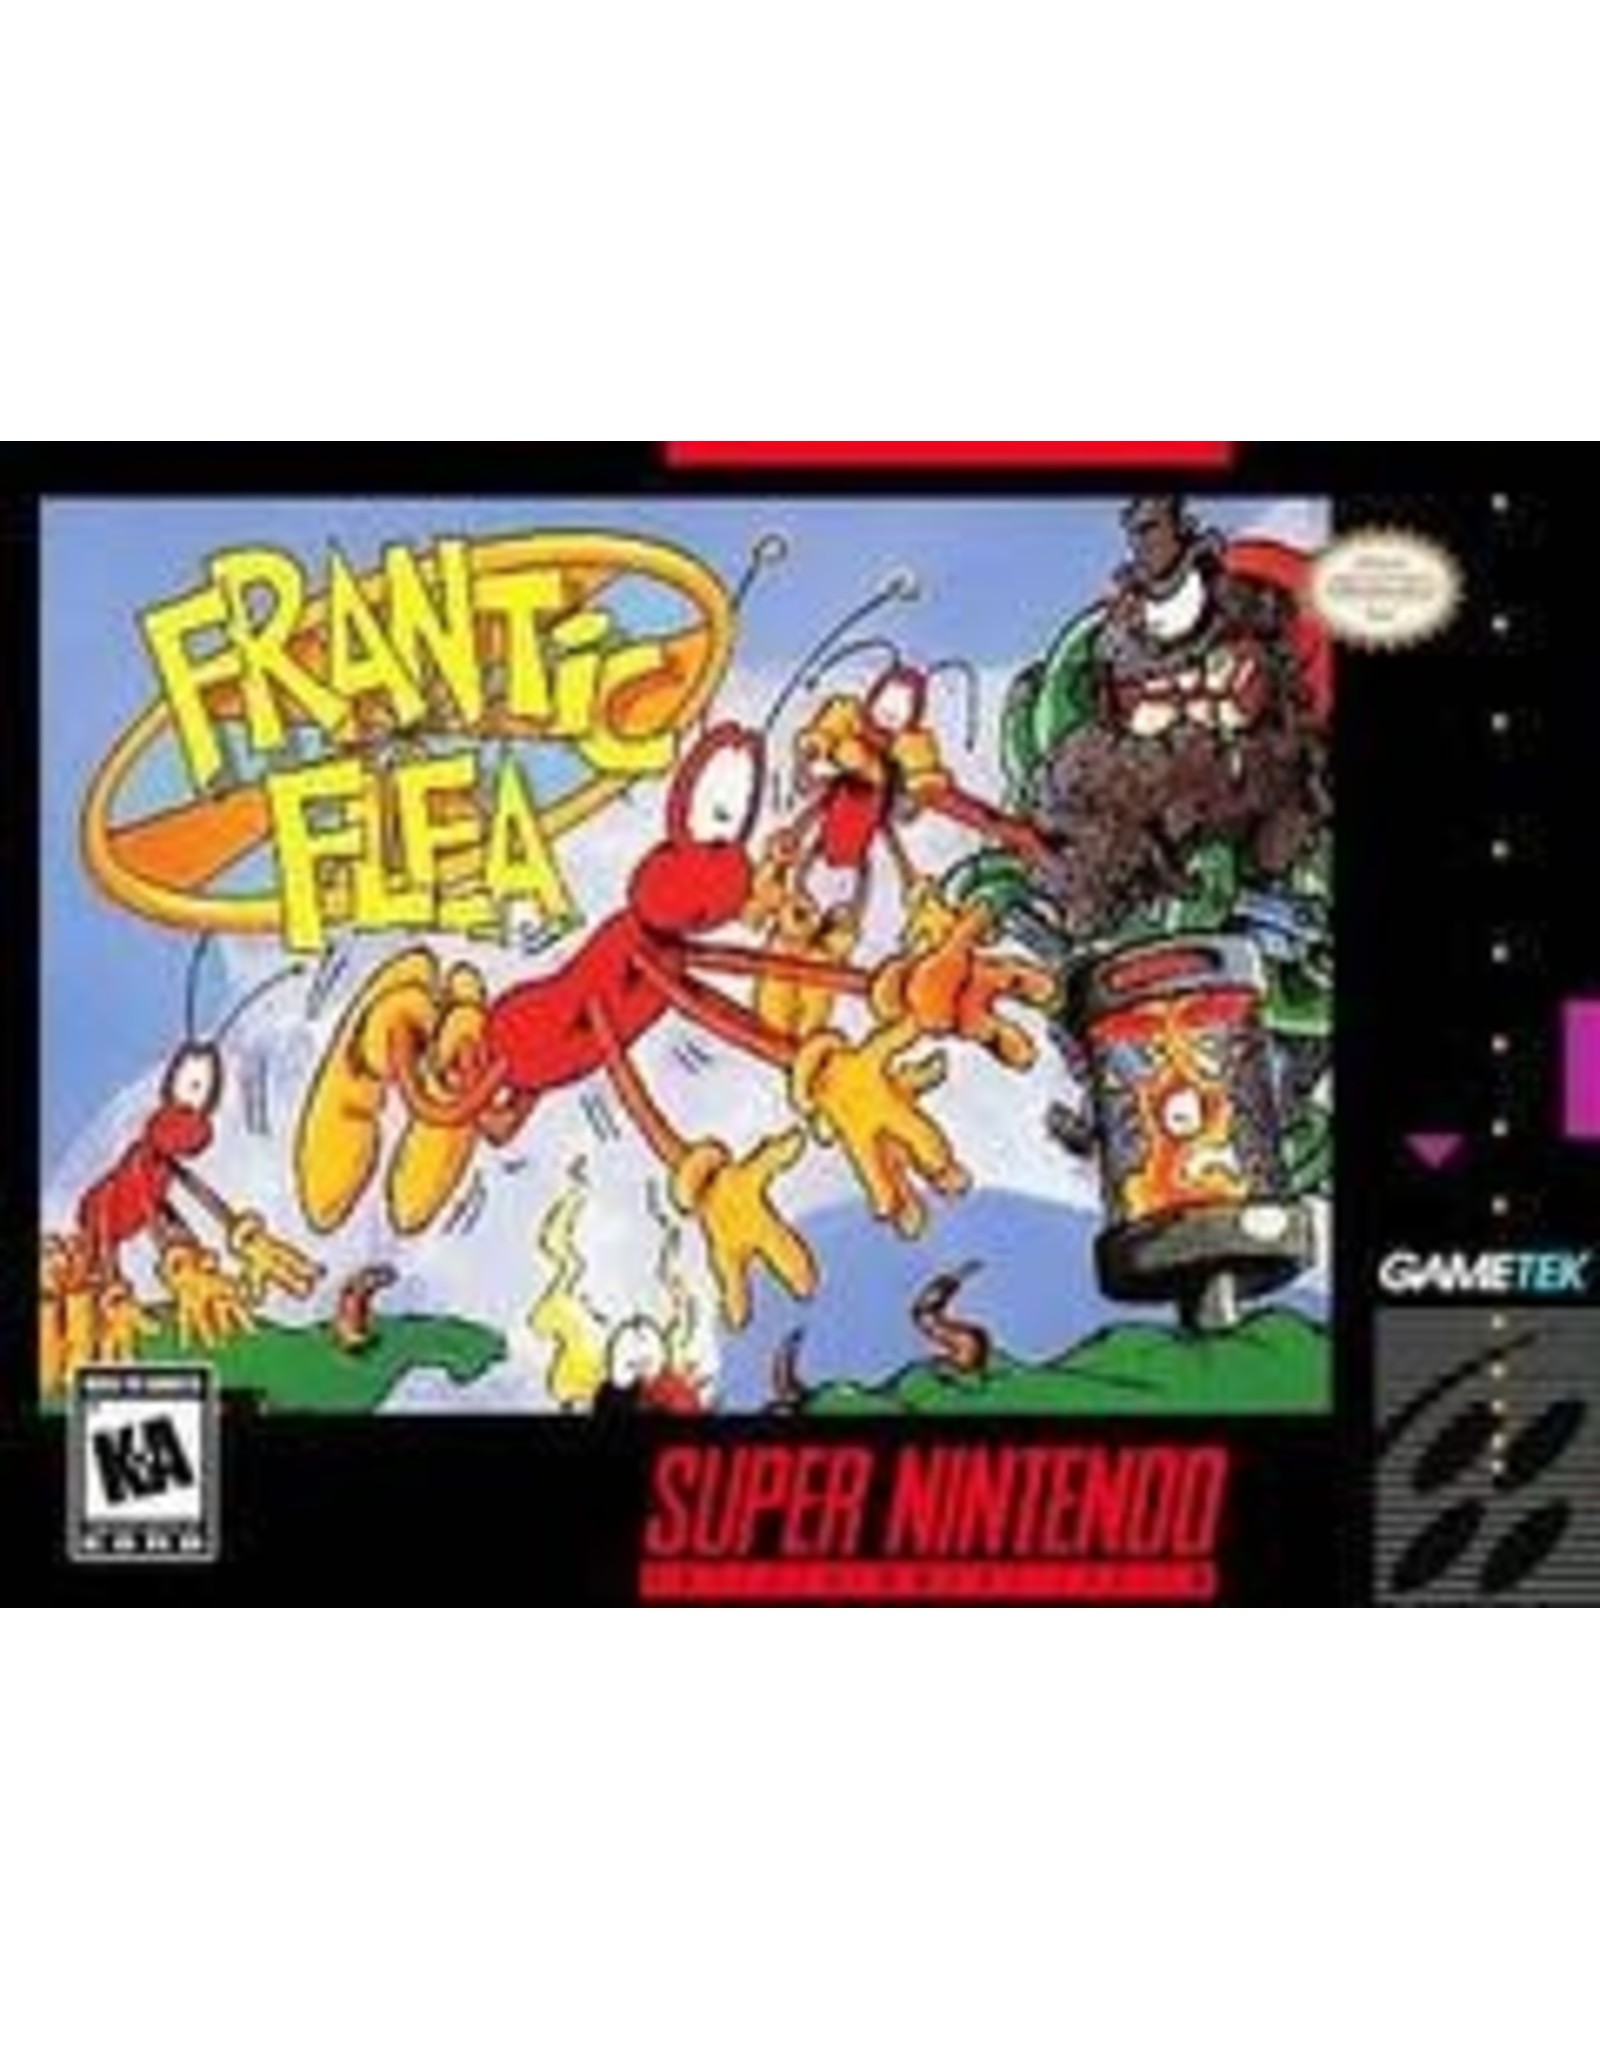 Super Nintendo Frantic Flea (Cart Only)